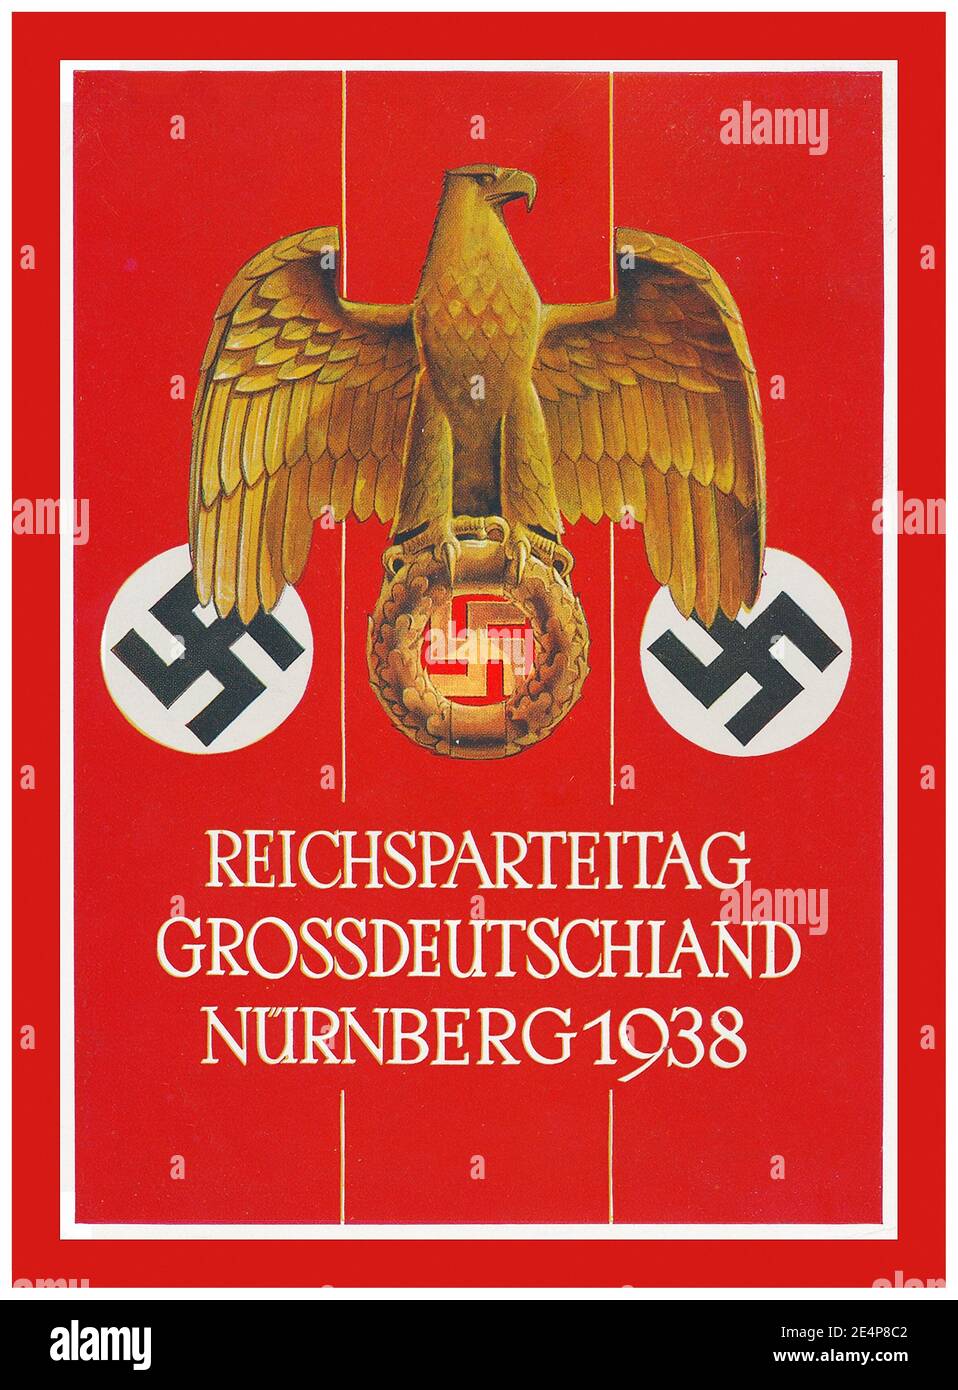 1938 propagande nazie de Nürnberg 'Congrès du Parti nazi' Reichsparteitag carte d'affichage illustration grande Allemagne aigle impérial allemand avec la swastika nazie, Verlag photo-Hoffmann Company Banque D'Images